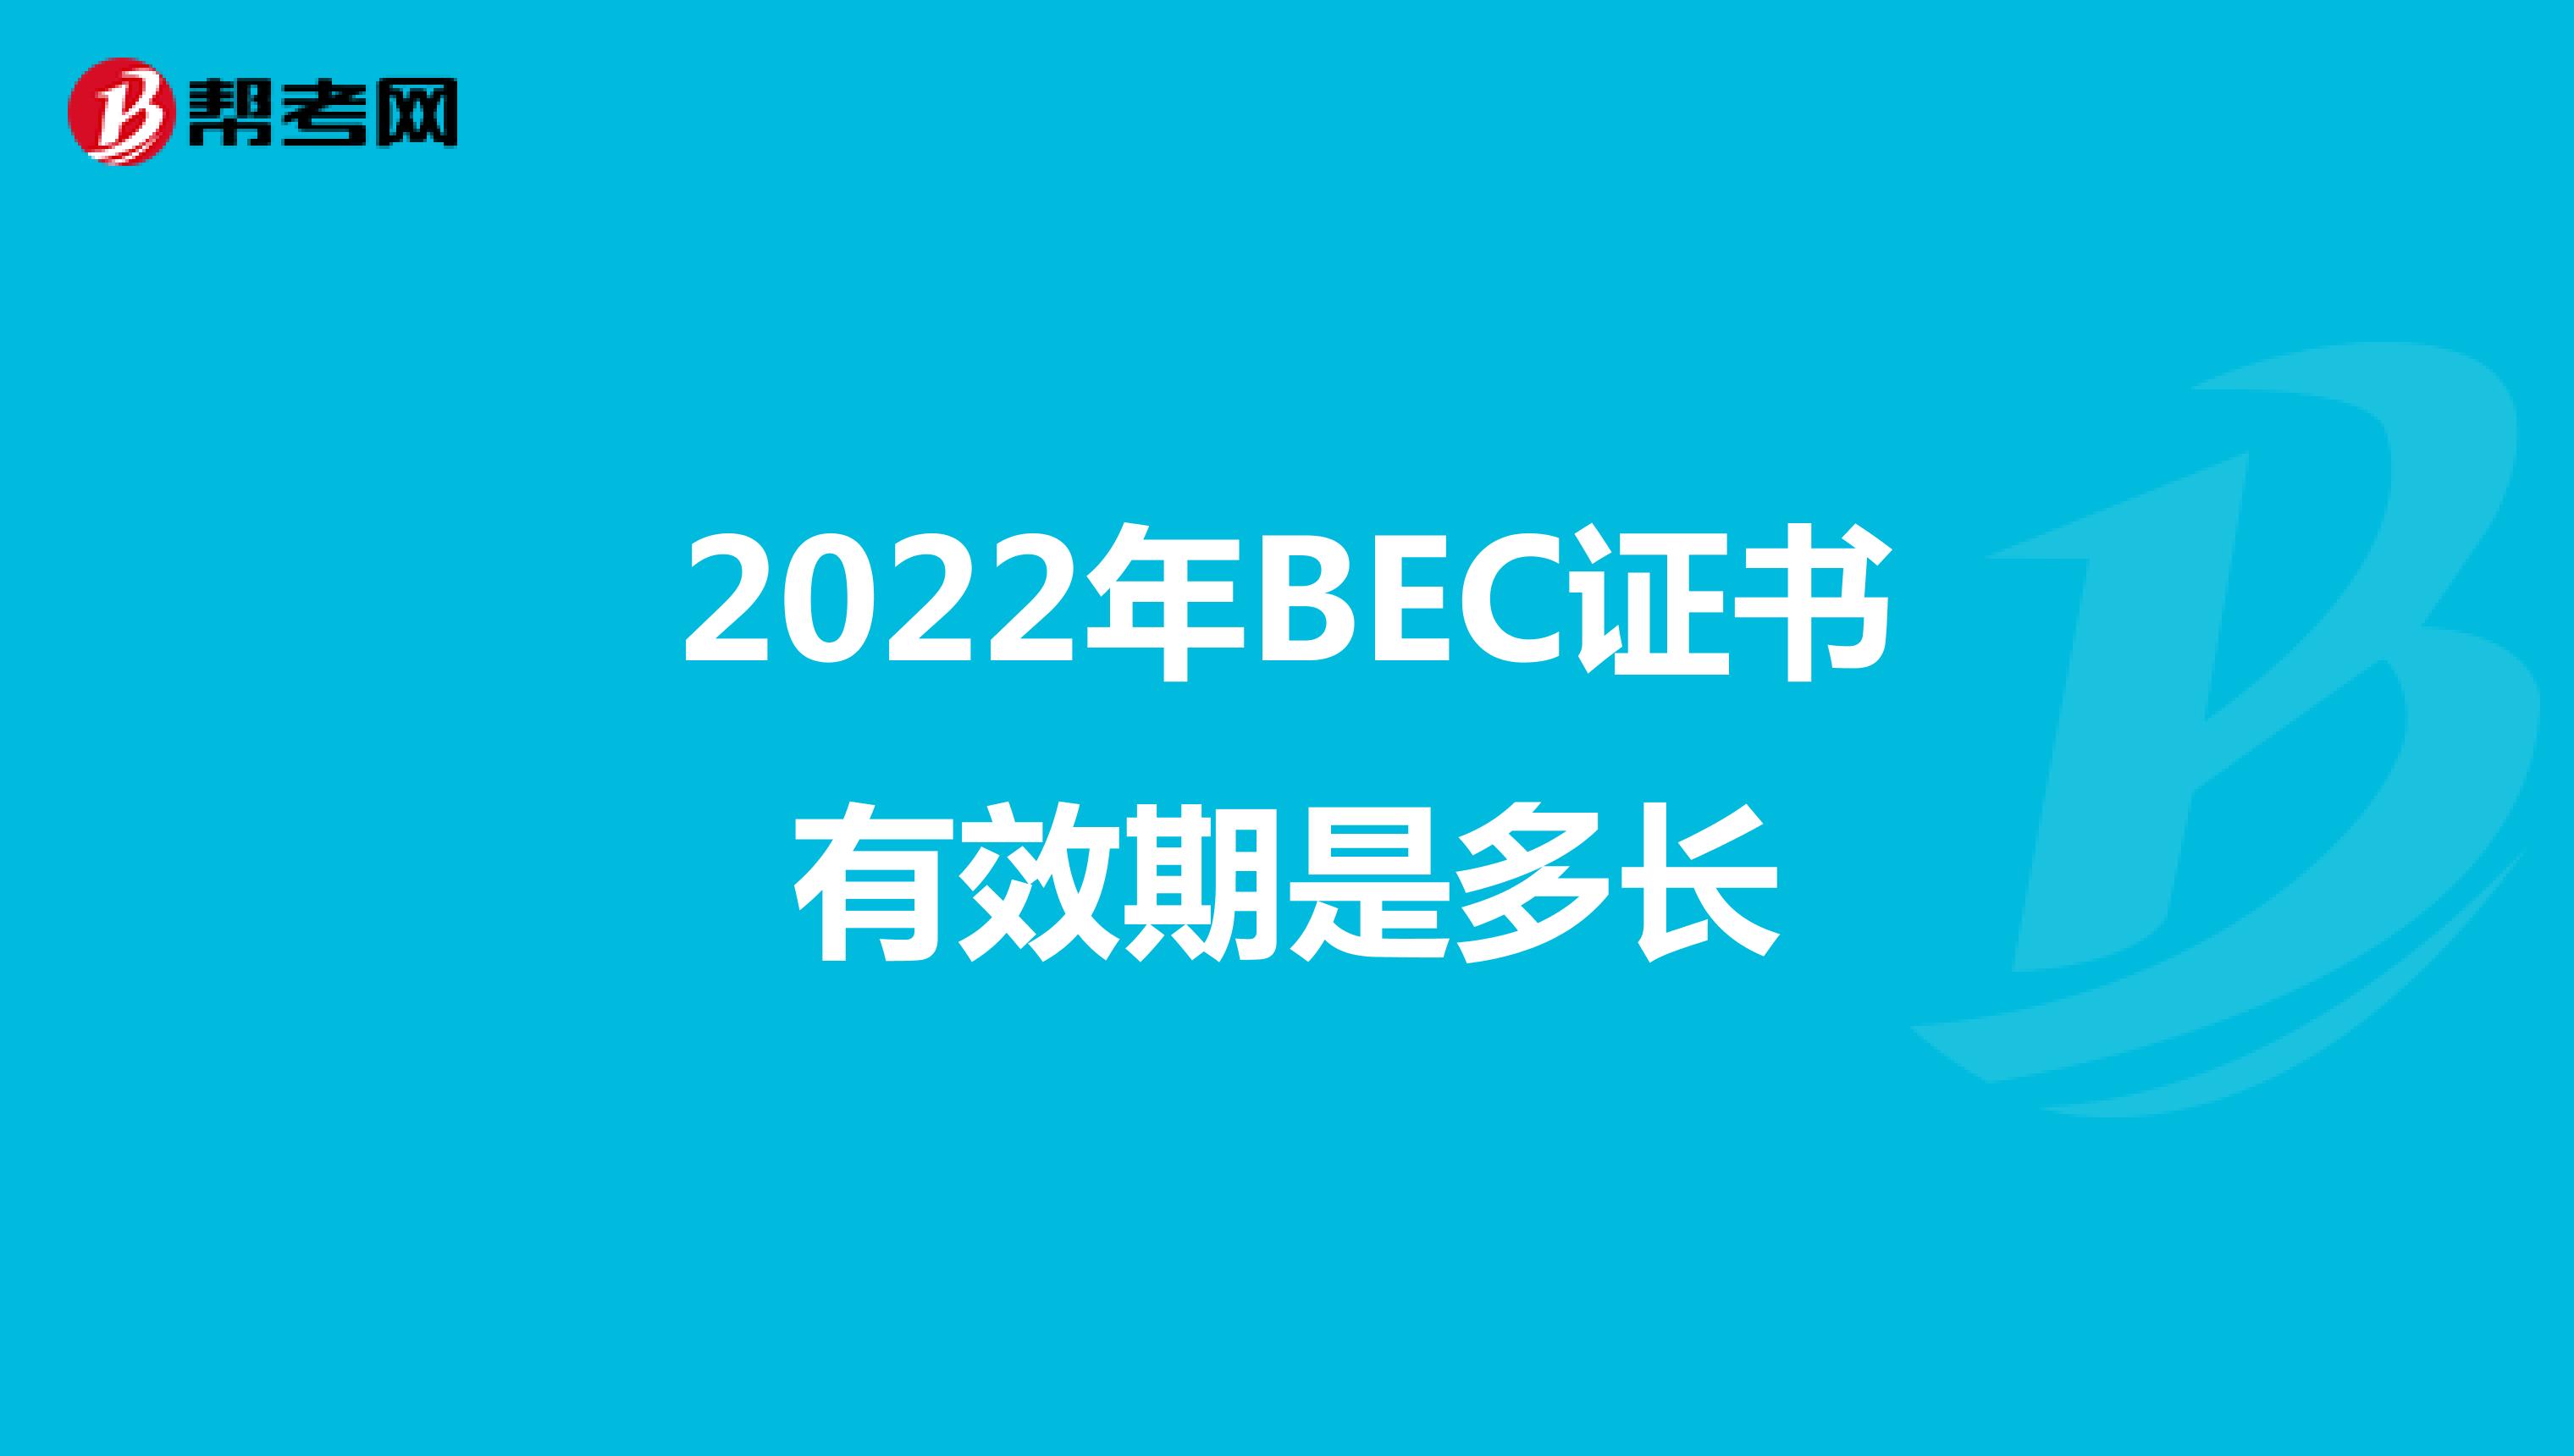 2022年BEC证书有效期是多长